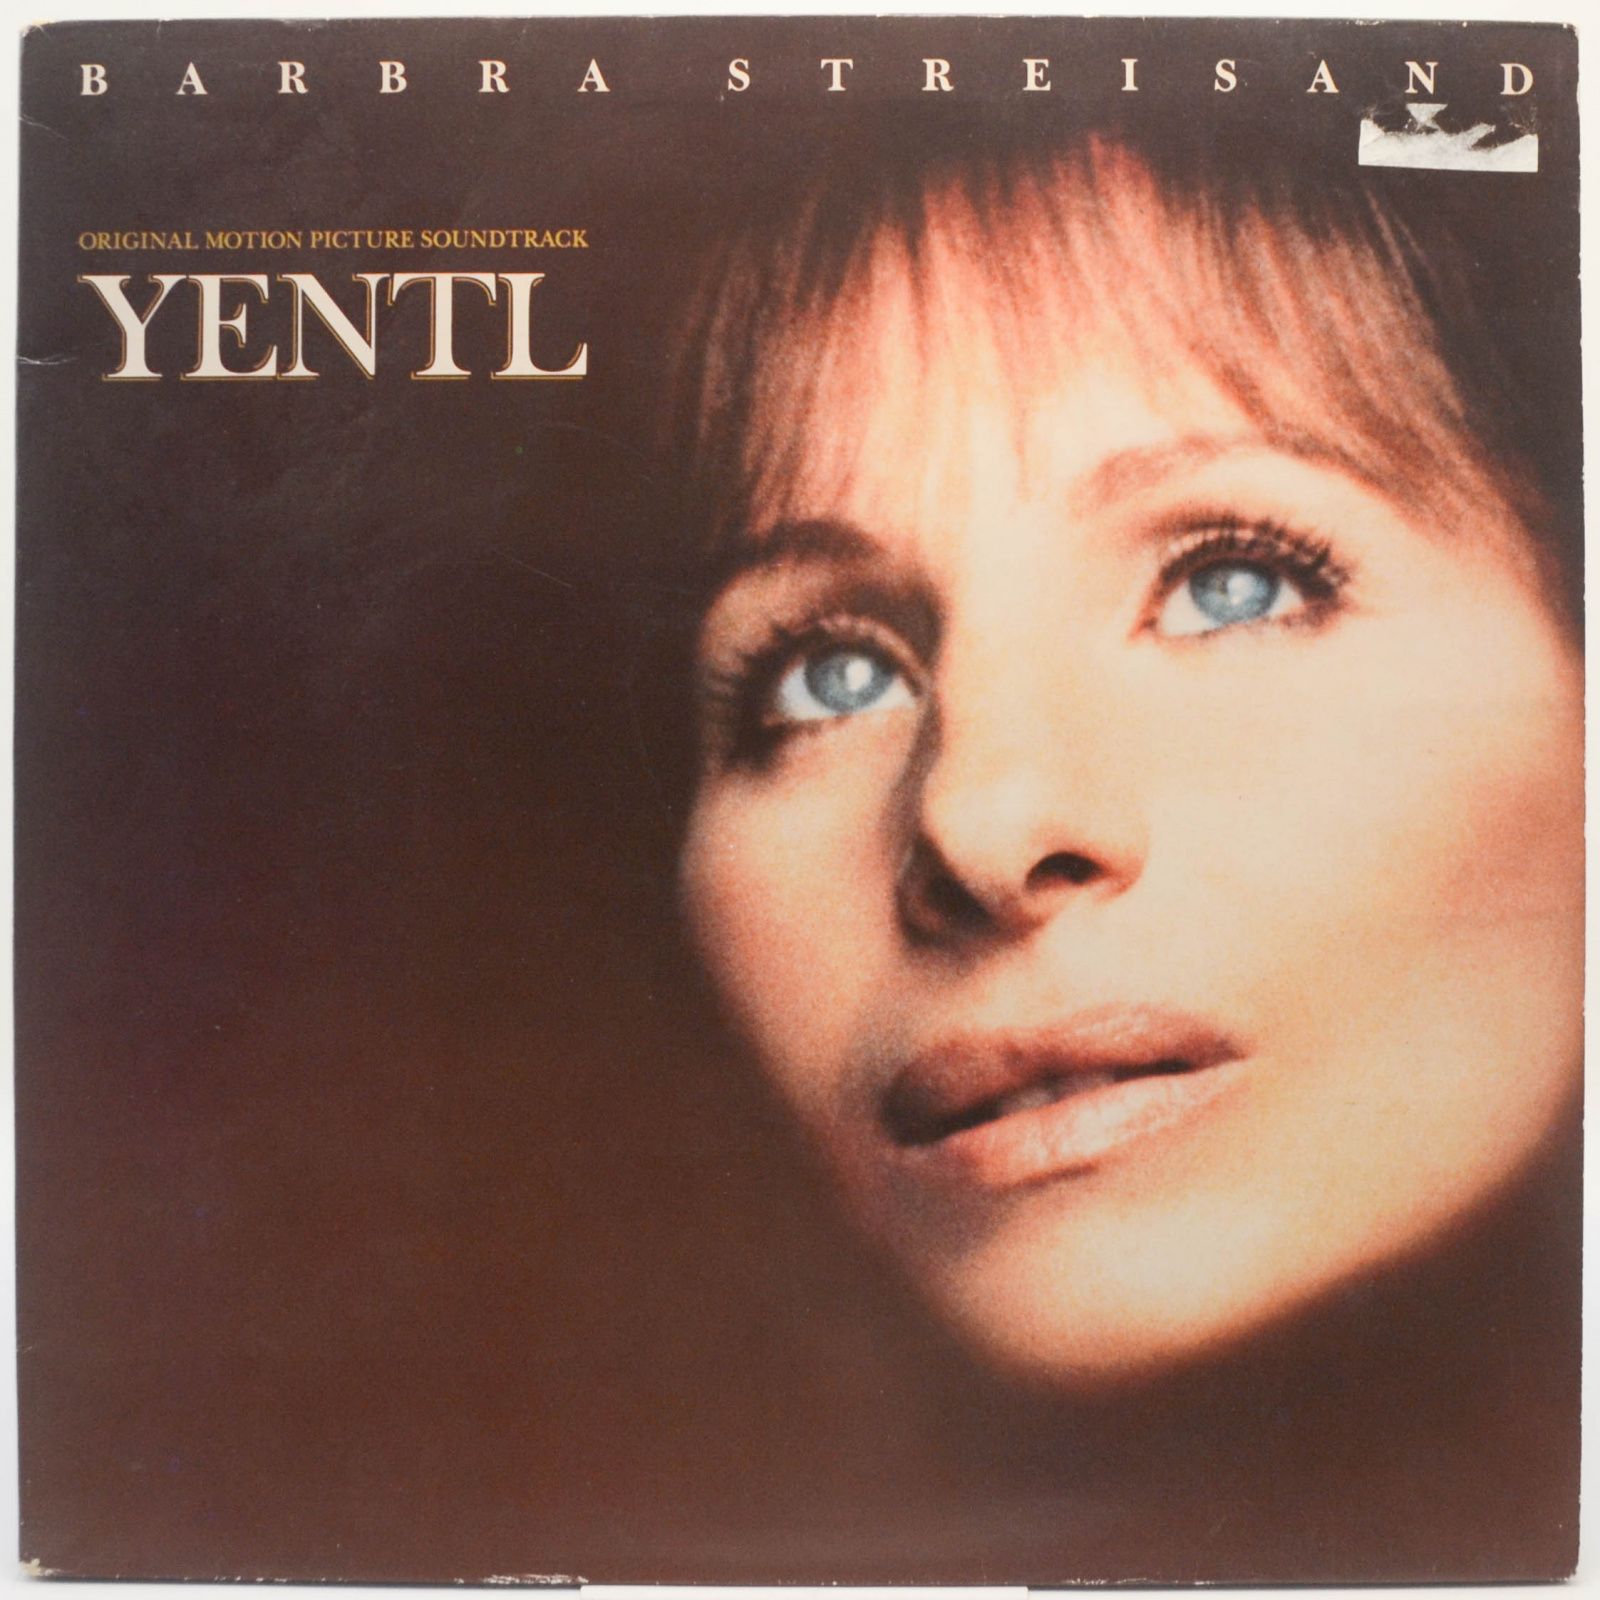 Yentl - Original Motion Picture Soundtrack, 1983